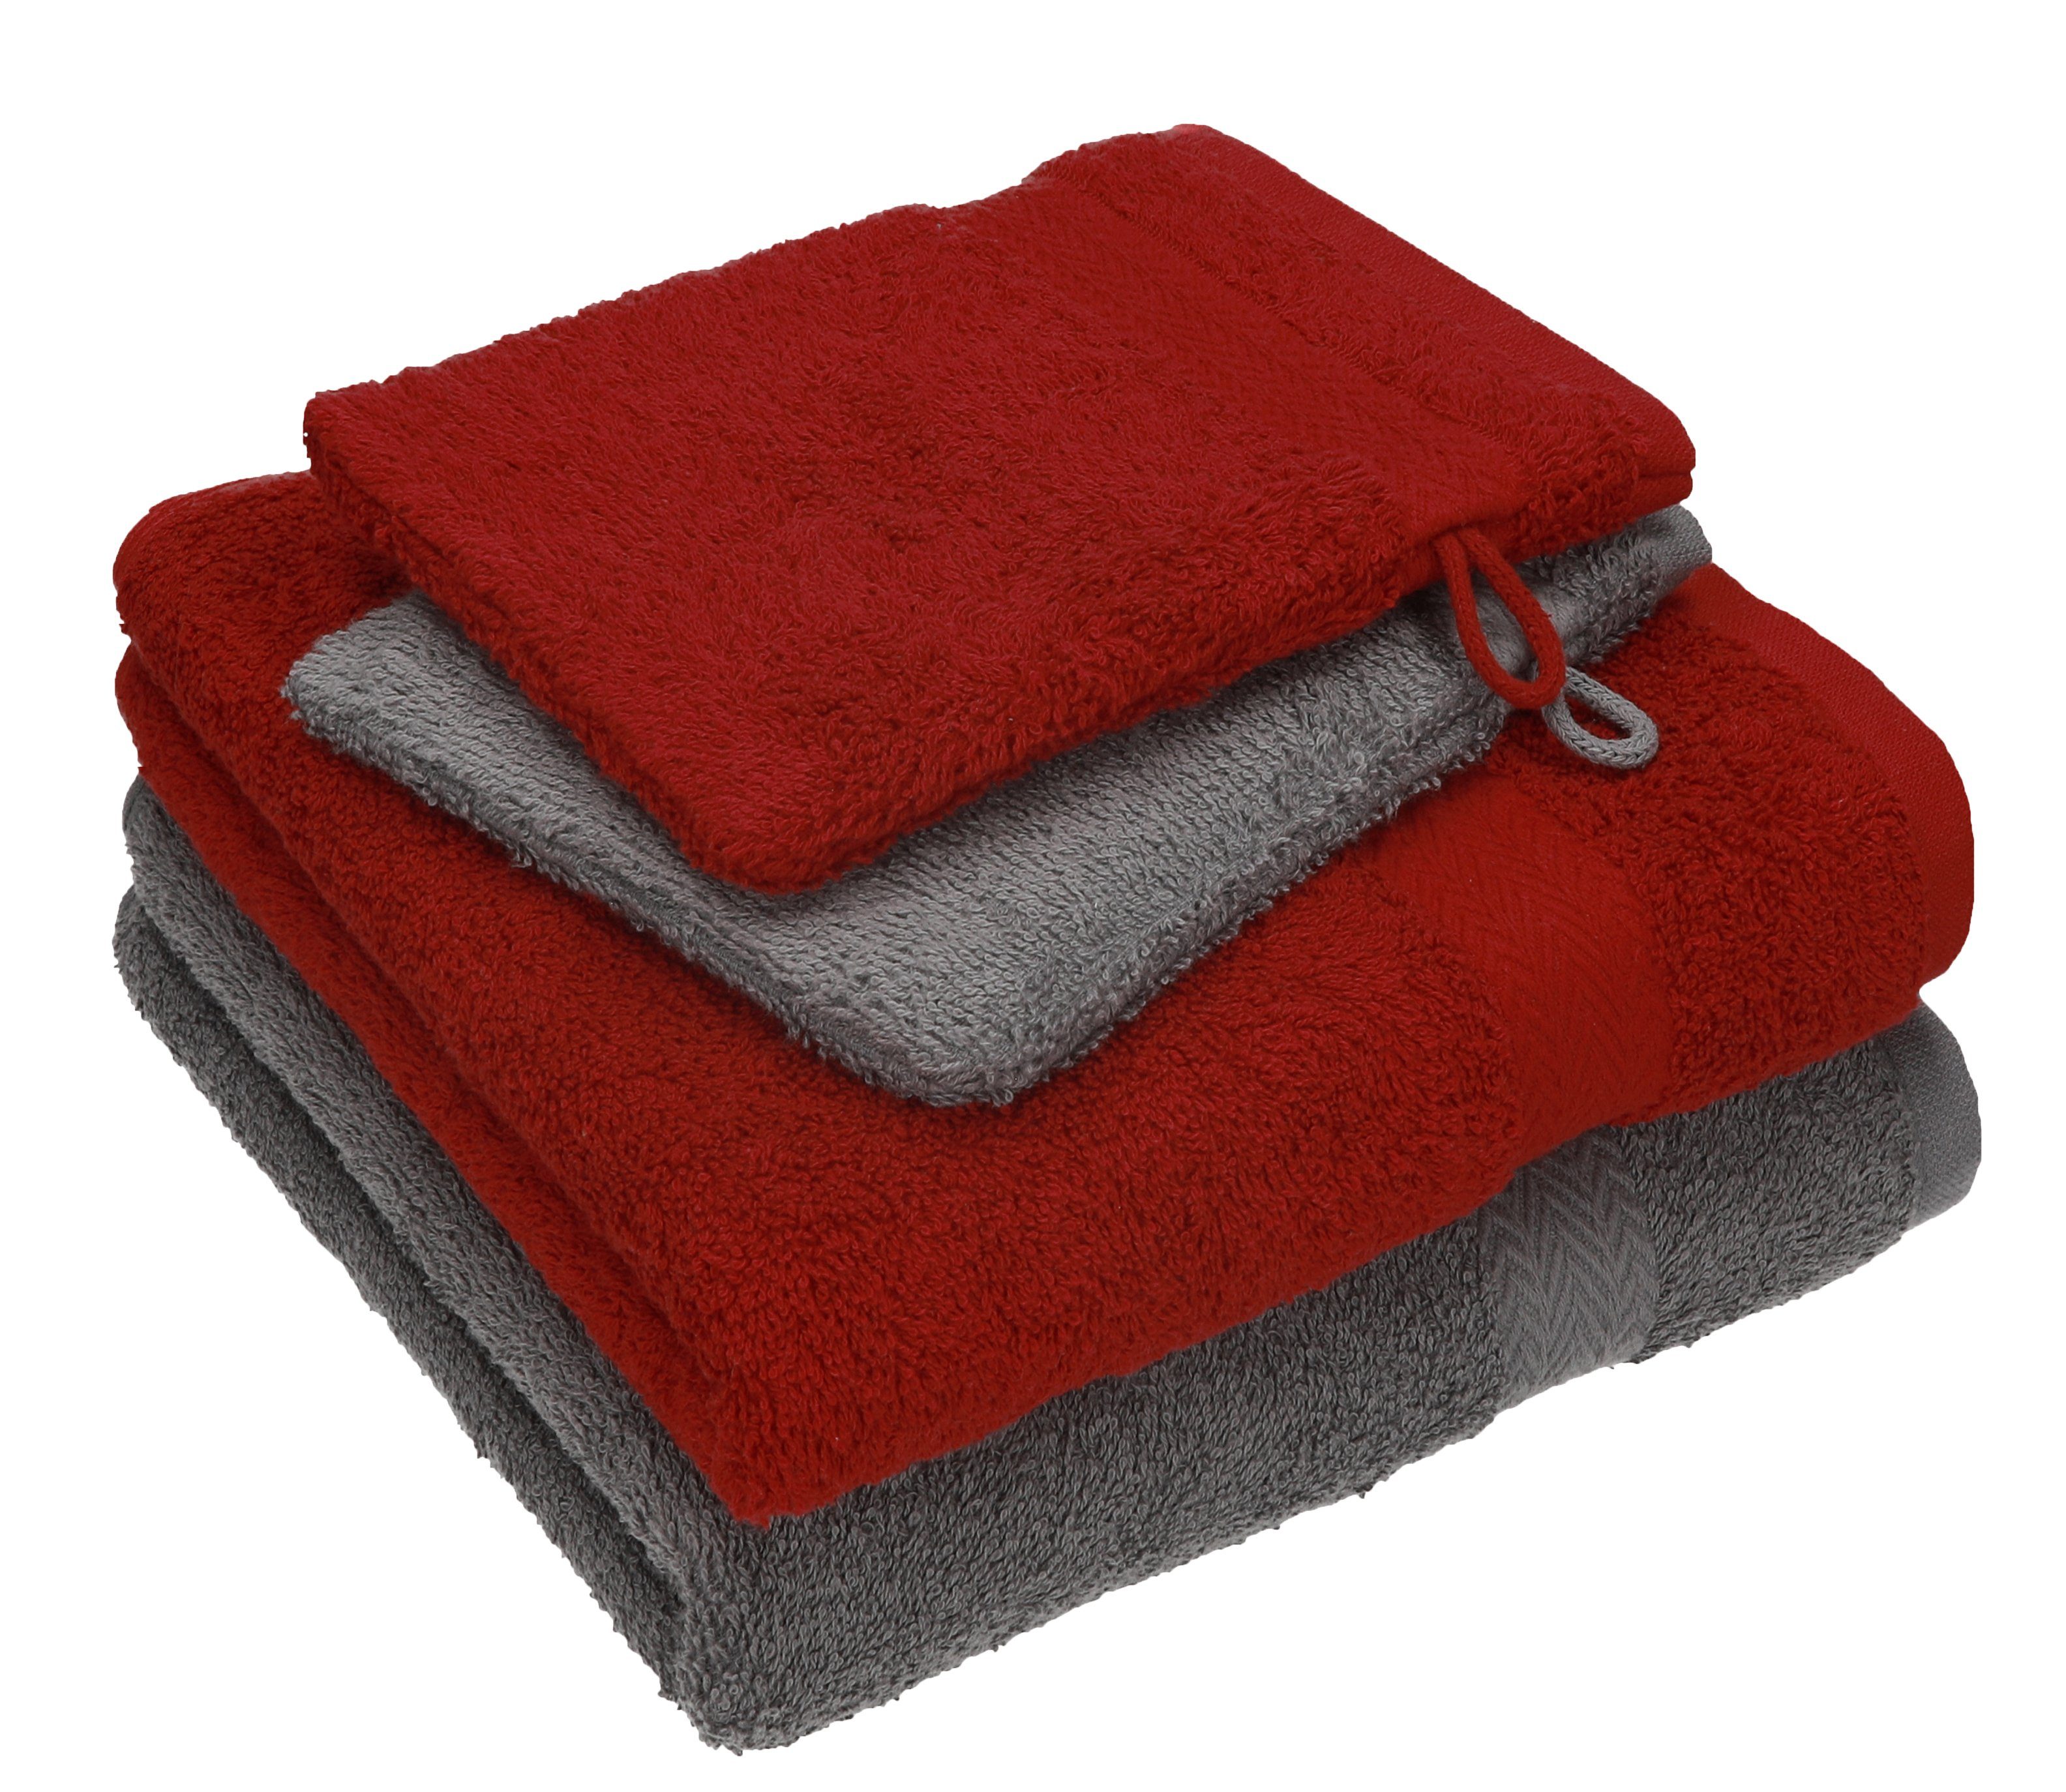 Betz Handtuch Set 4 TLG. Handtuch Set Happy Pack 100% Baumwolle 2 Handtücher 2 Waschhandschuhe, 100% Baumwolle anthrazit grau - rubinrot